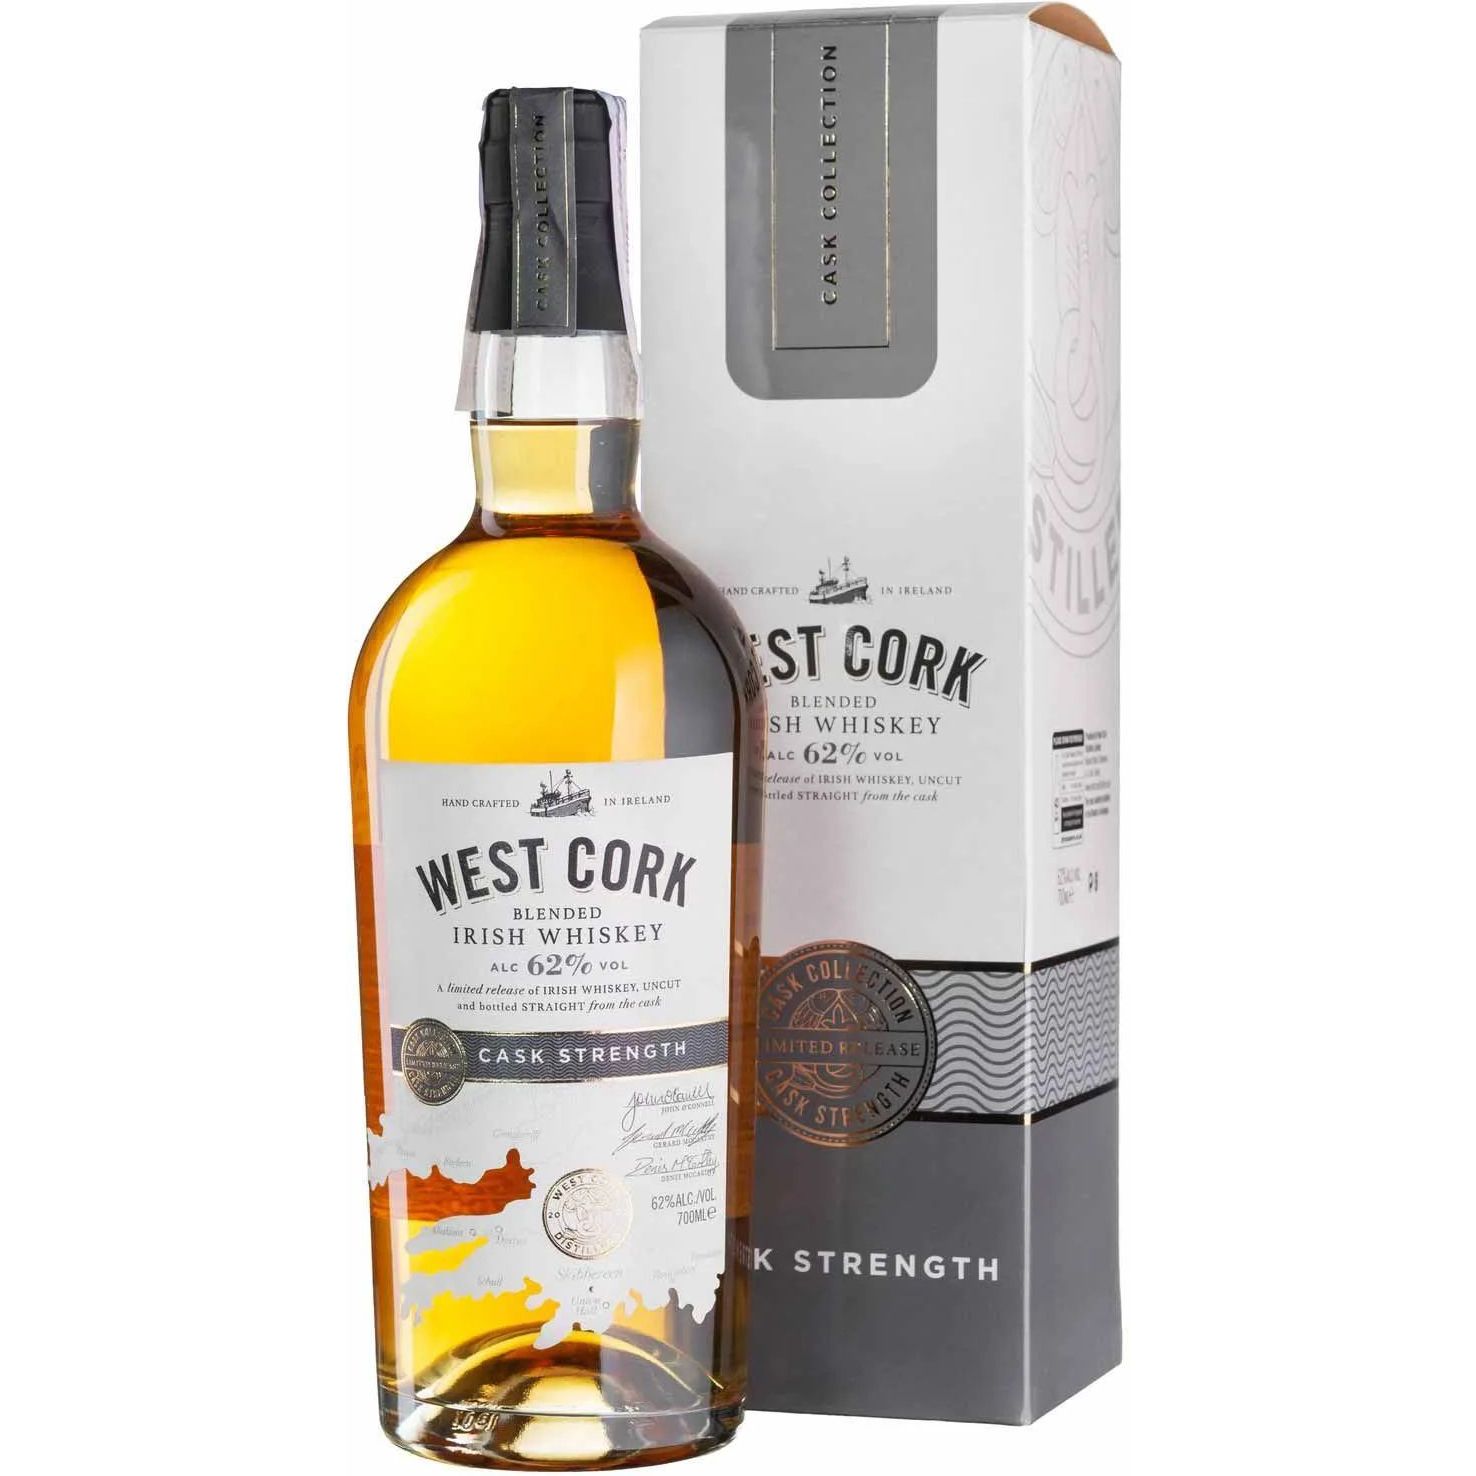 Віскі West Cork Cask Strength Blended Irish Whiskey 62% 0.7 л у подарунковій упаковці - фото 1